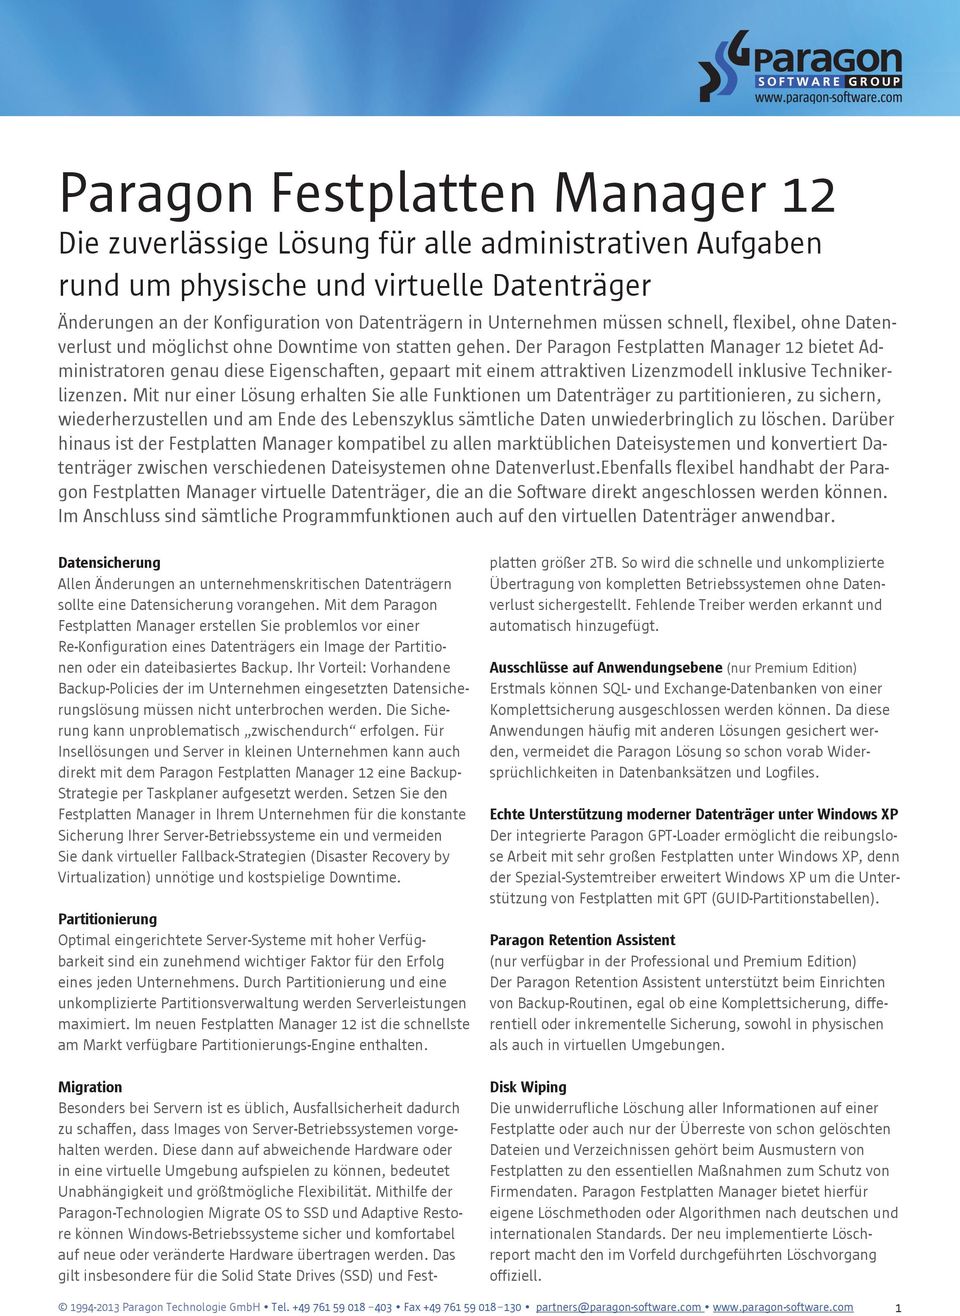 Der Paragon Festplatten Manager 12 bietet Administratoren genau diese Eigenschaften, gepaart mit einem attraktiven Lizenzmodell inklusive Technikerlizenzen.